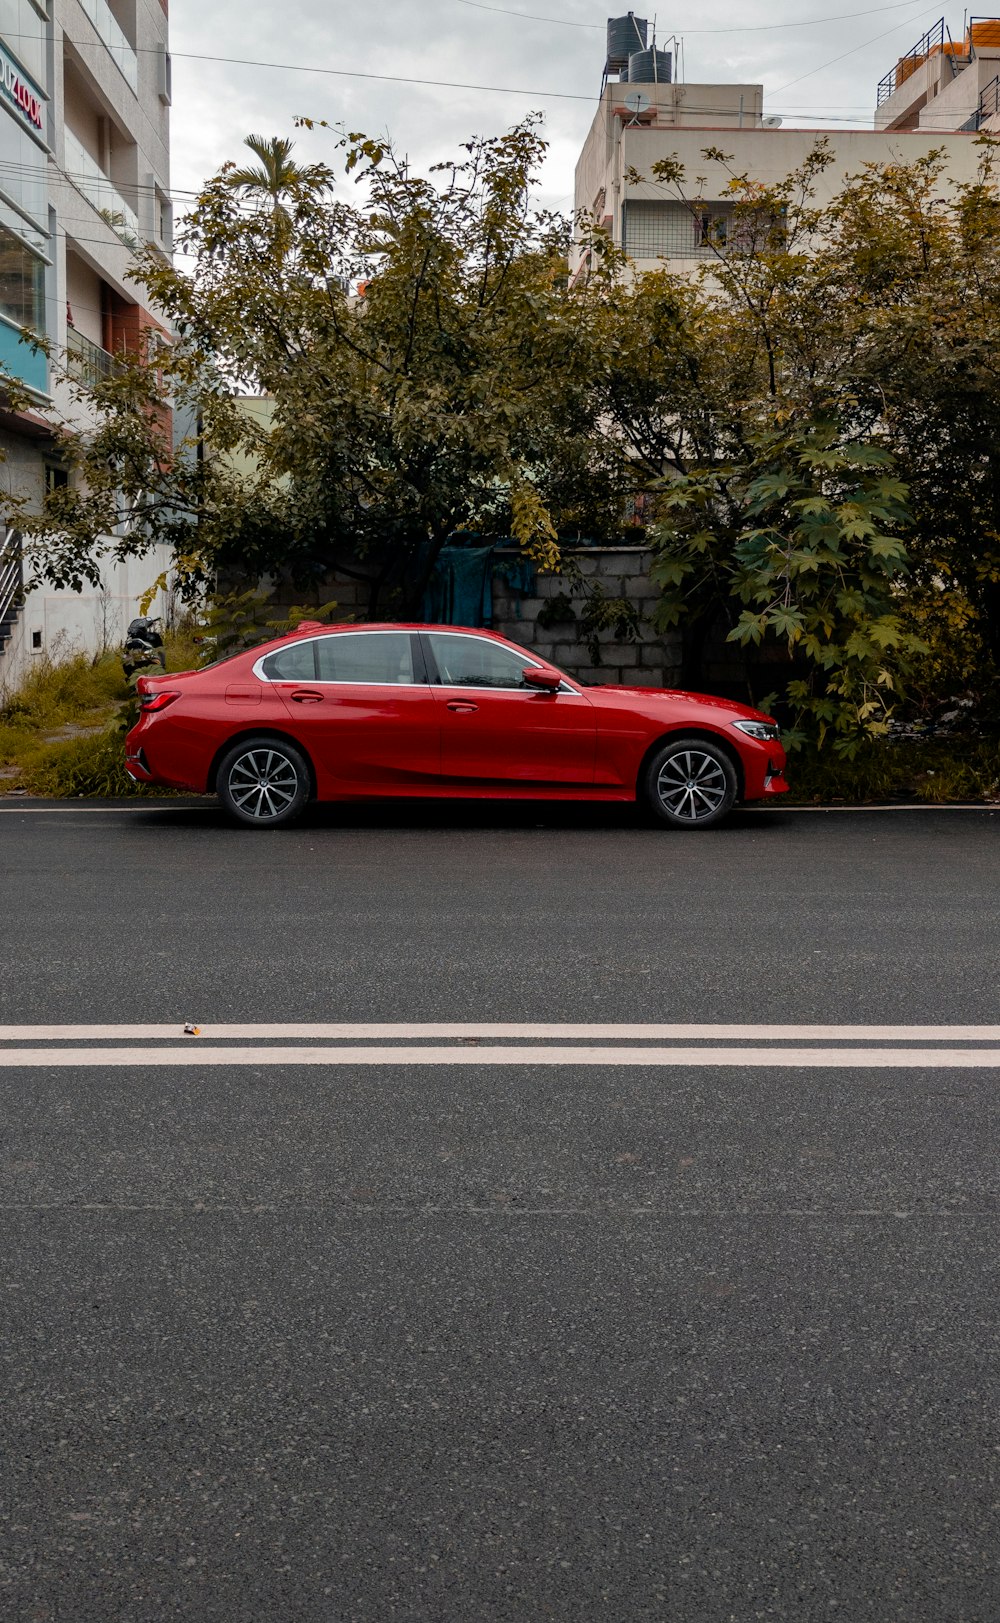 Ein rotes Auto, das am Straßenrand geparkt ist